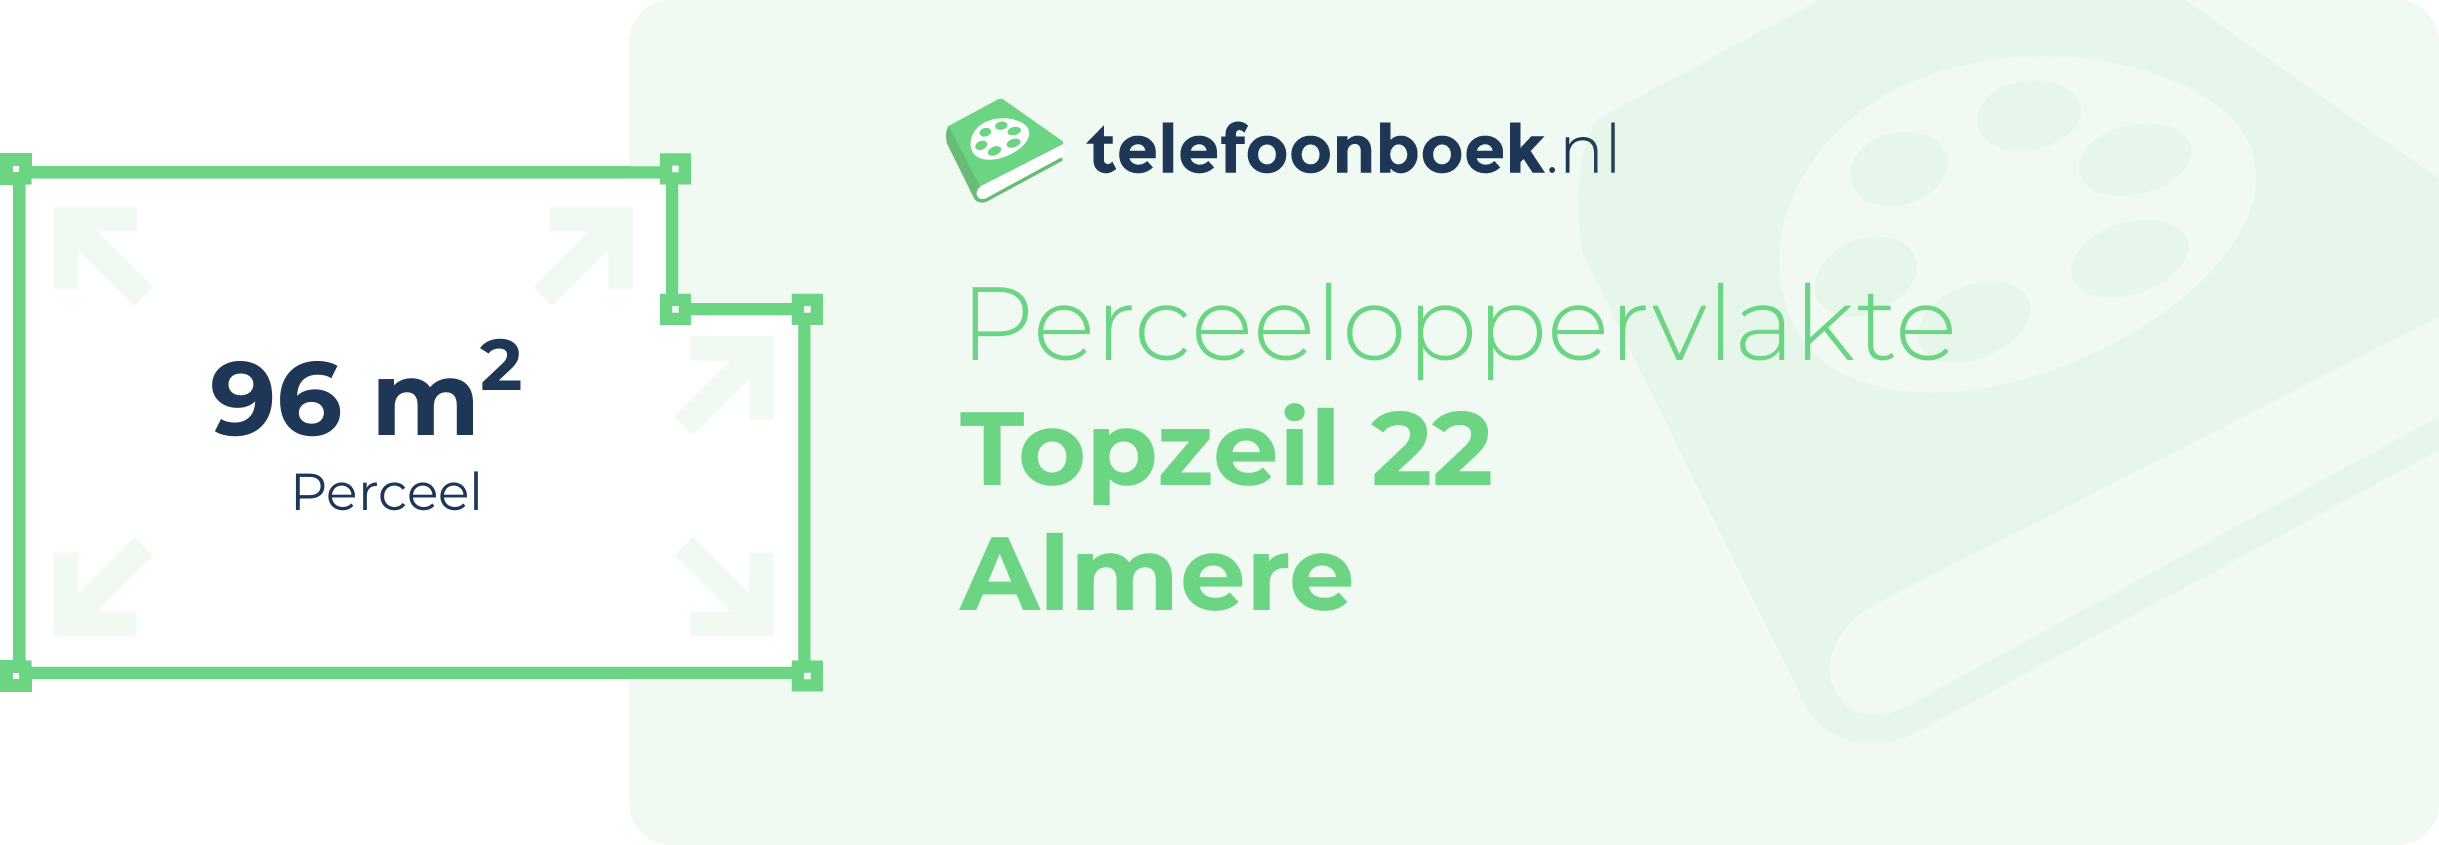 Perceeloppervlakte Topzeil 22 Almere